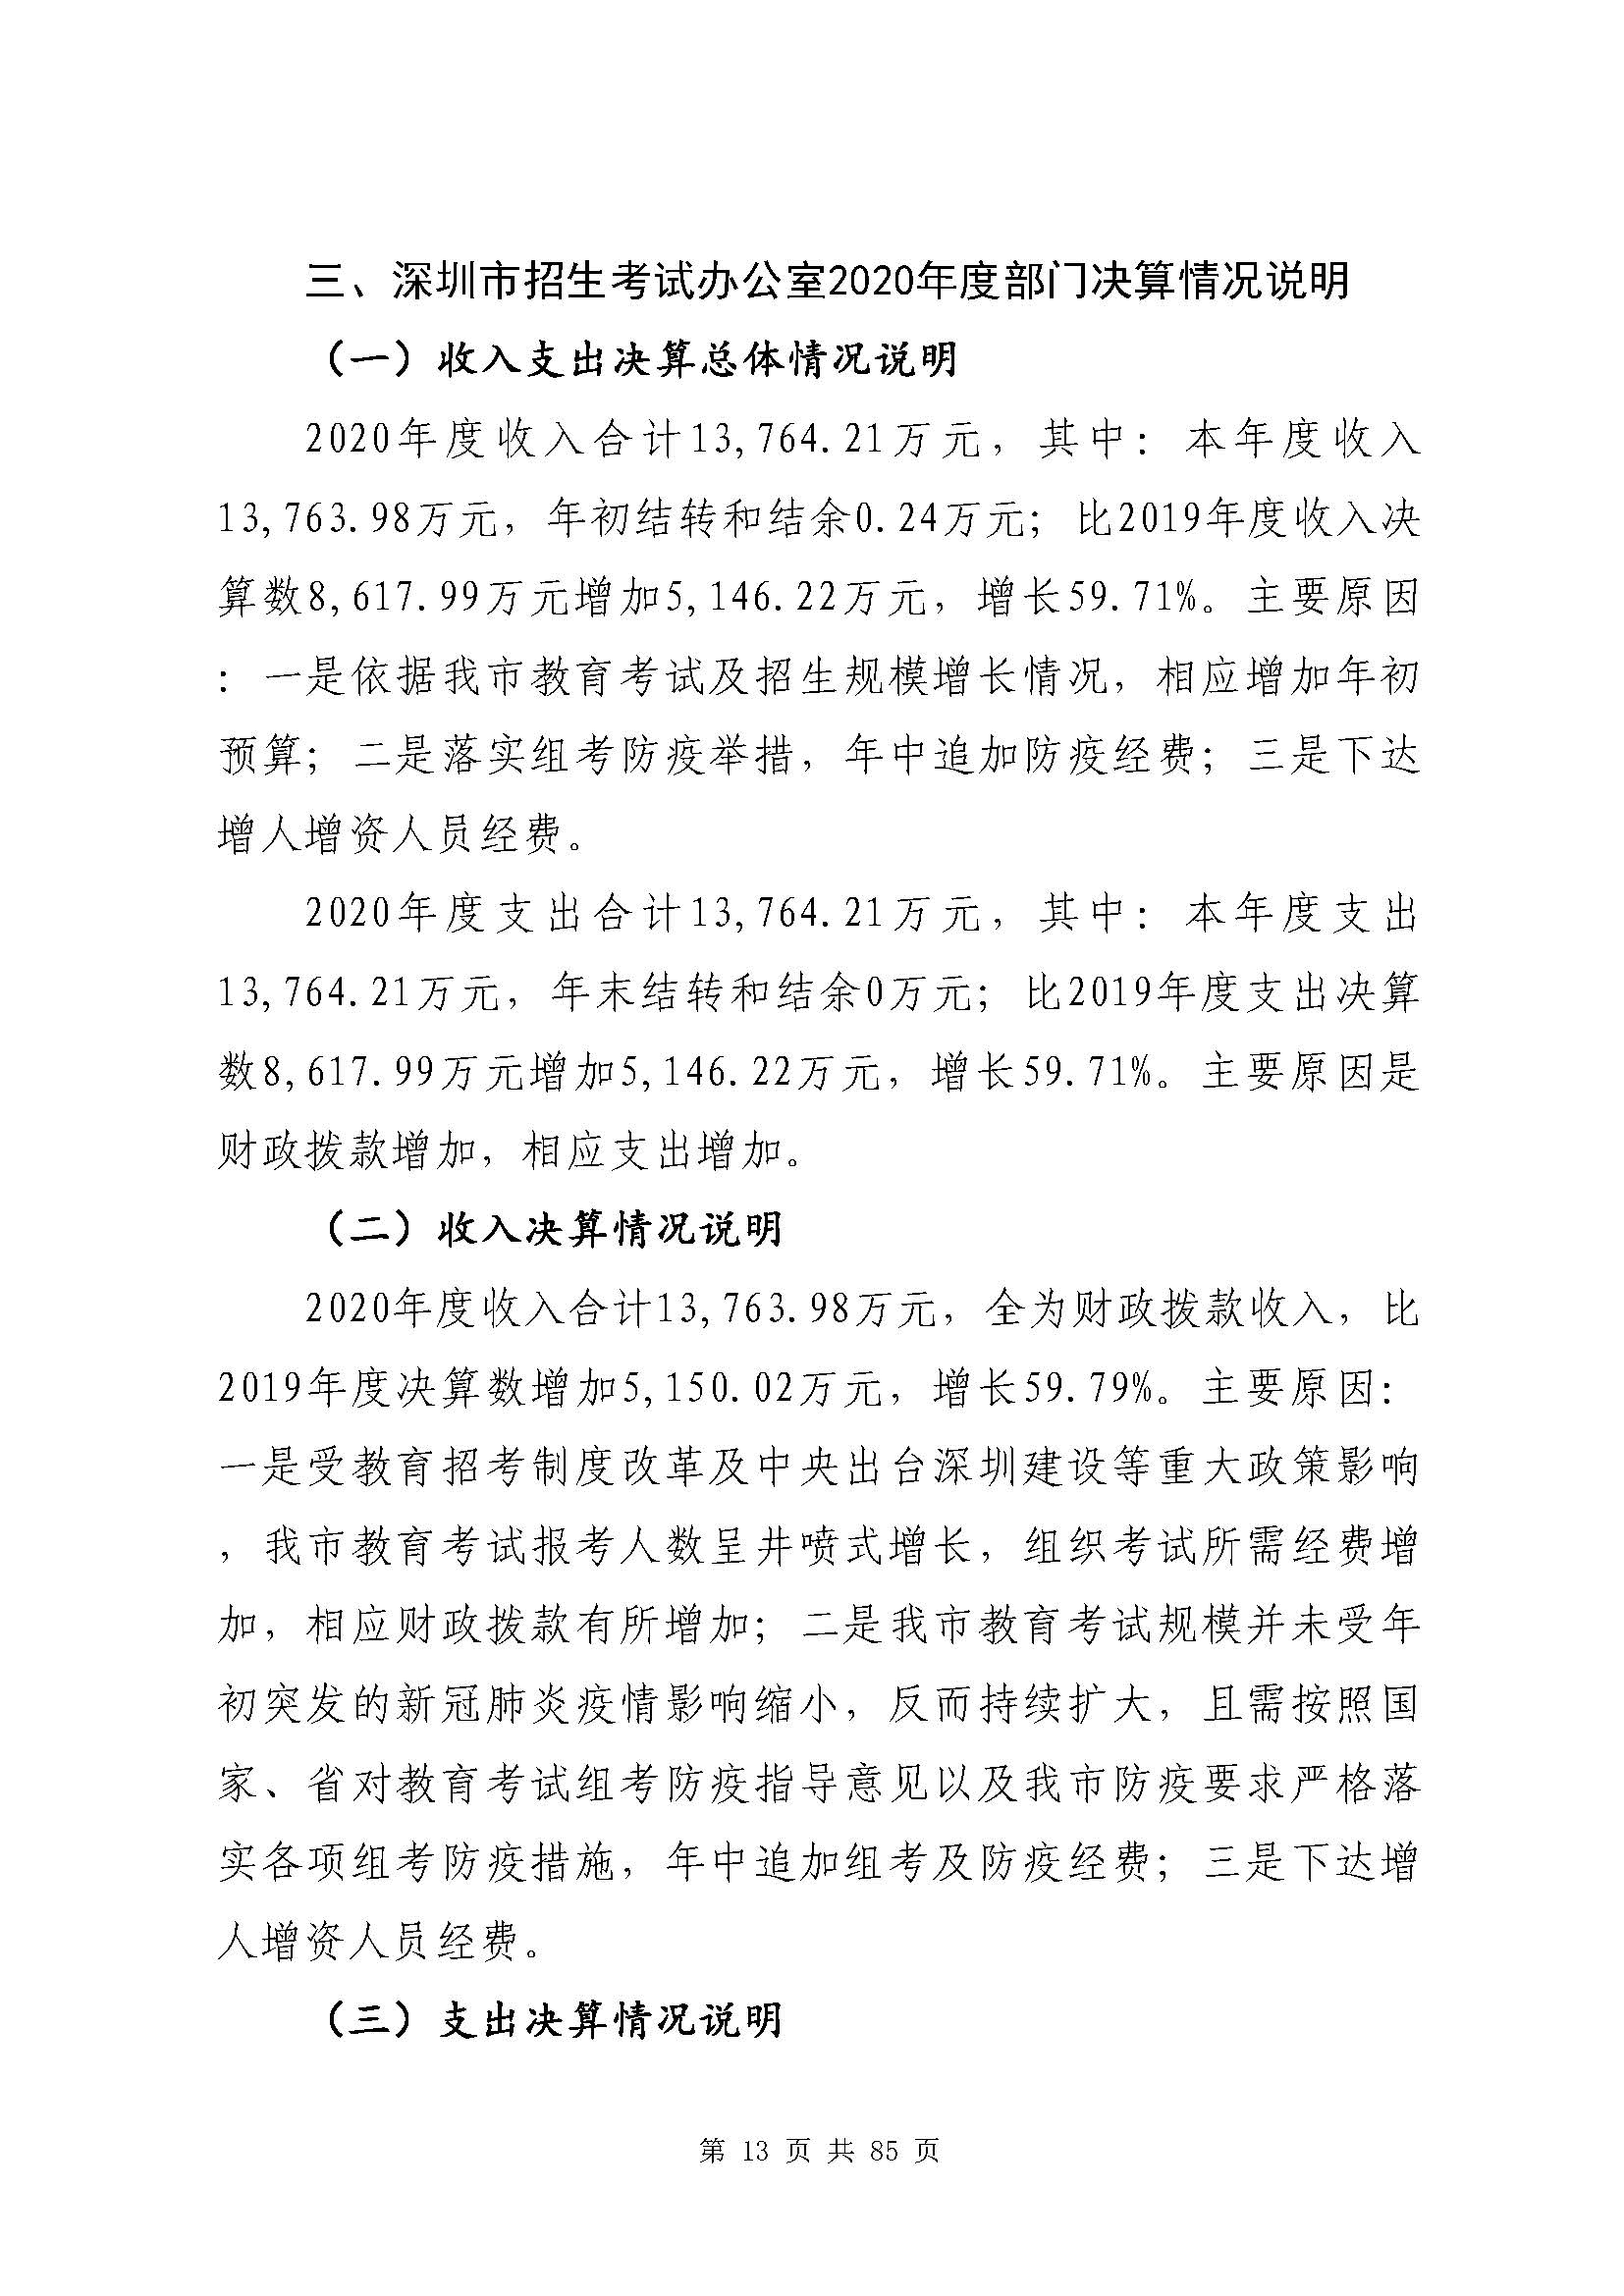 深圳市招生考试办公室2020年度部门决算_页面_14.jpg